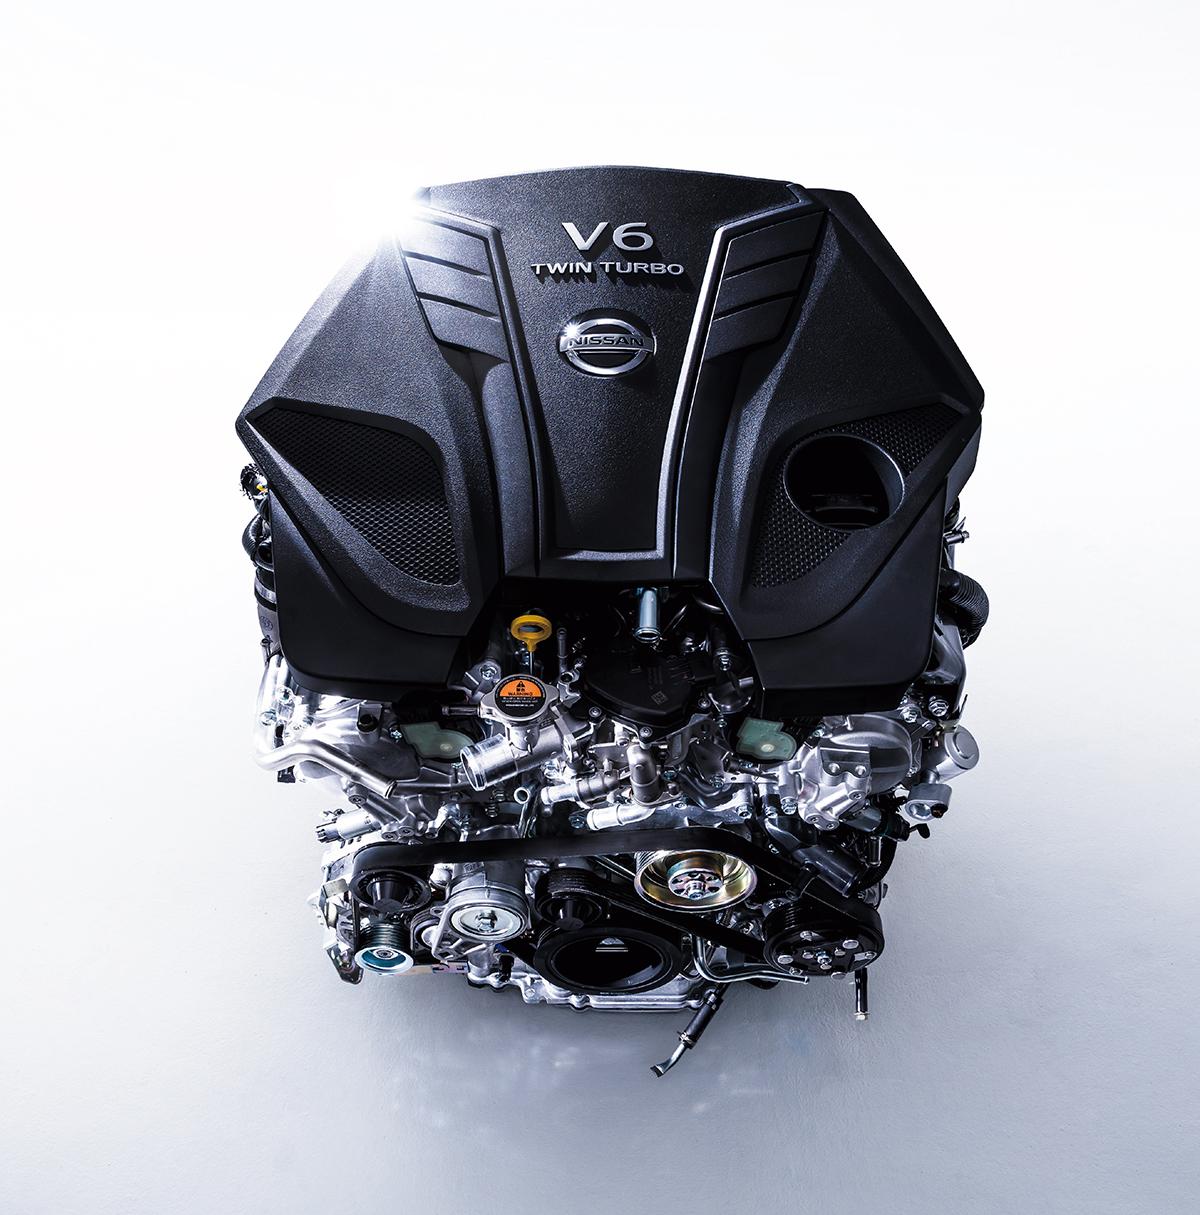 V6ツインターボエンジン